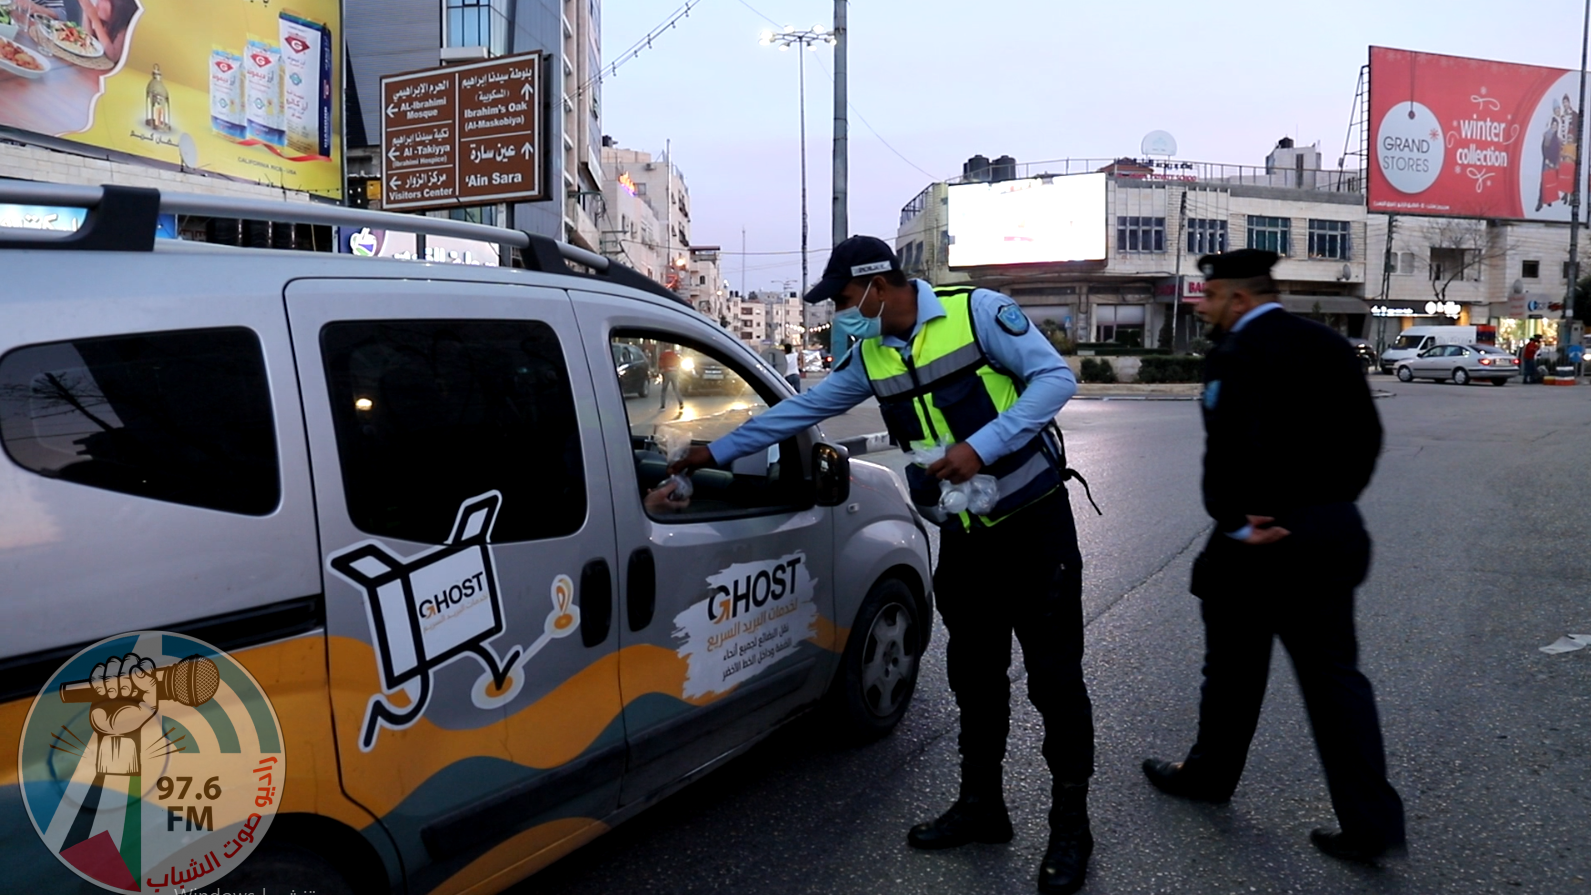 برنامج في ضيافة الفرسان يسلط الضوء على عمل عناصر الشرطة الفلسطينية خلال شهر رمضان المبارك